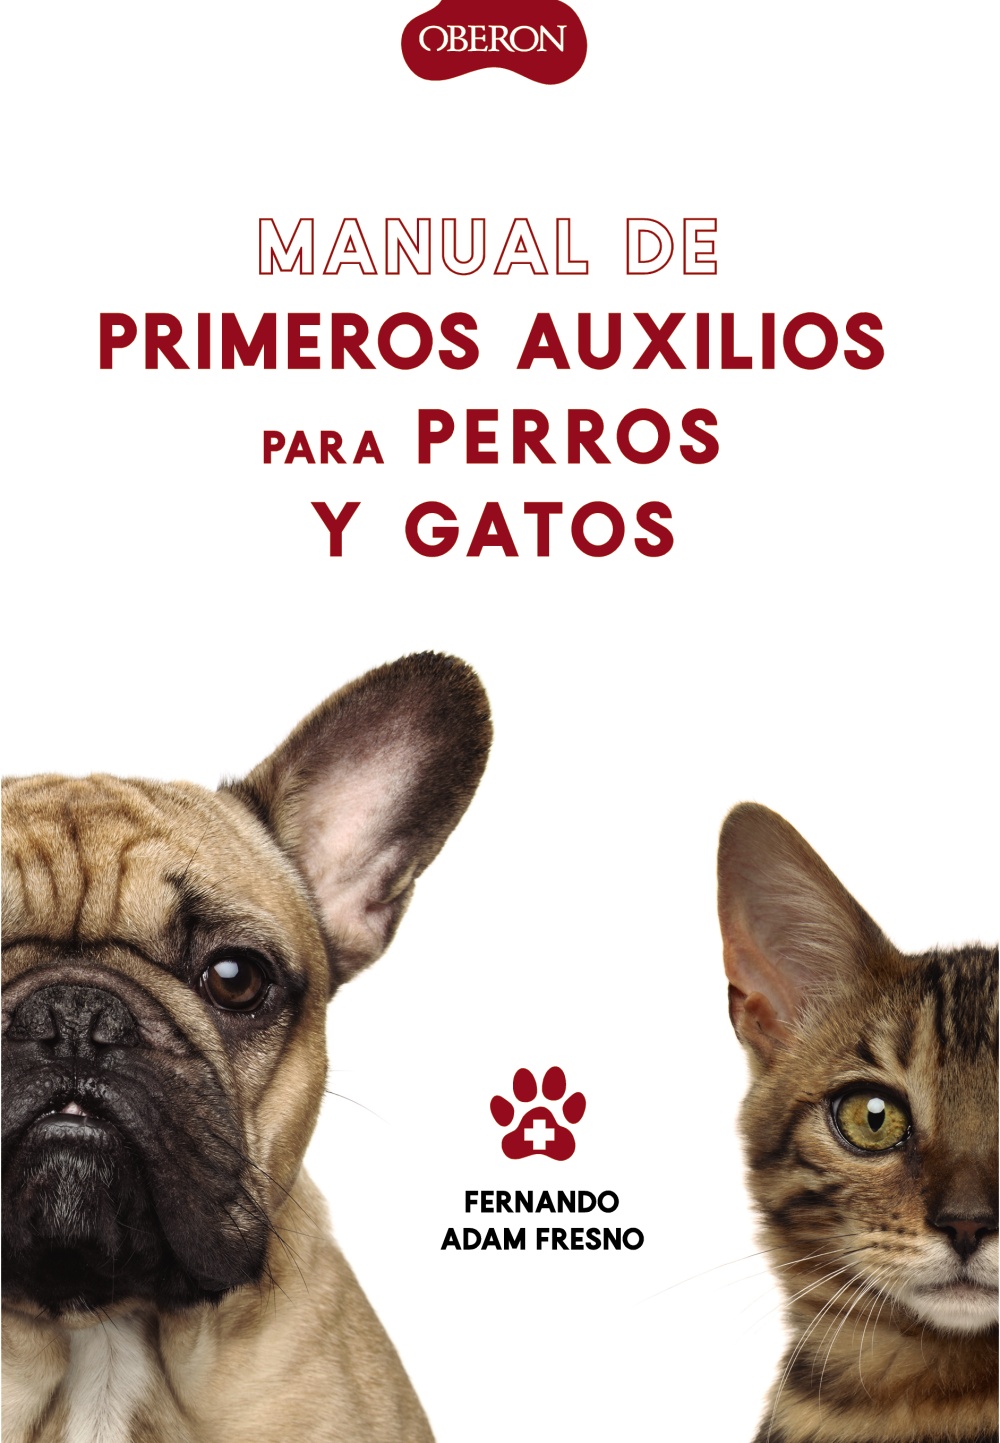 manual-de-primeros-auxilios-para-perros-y-gatos-978-84-415-4189-4.jpg